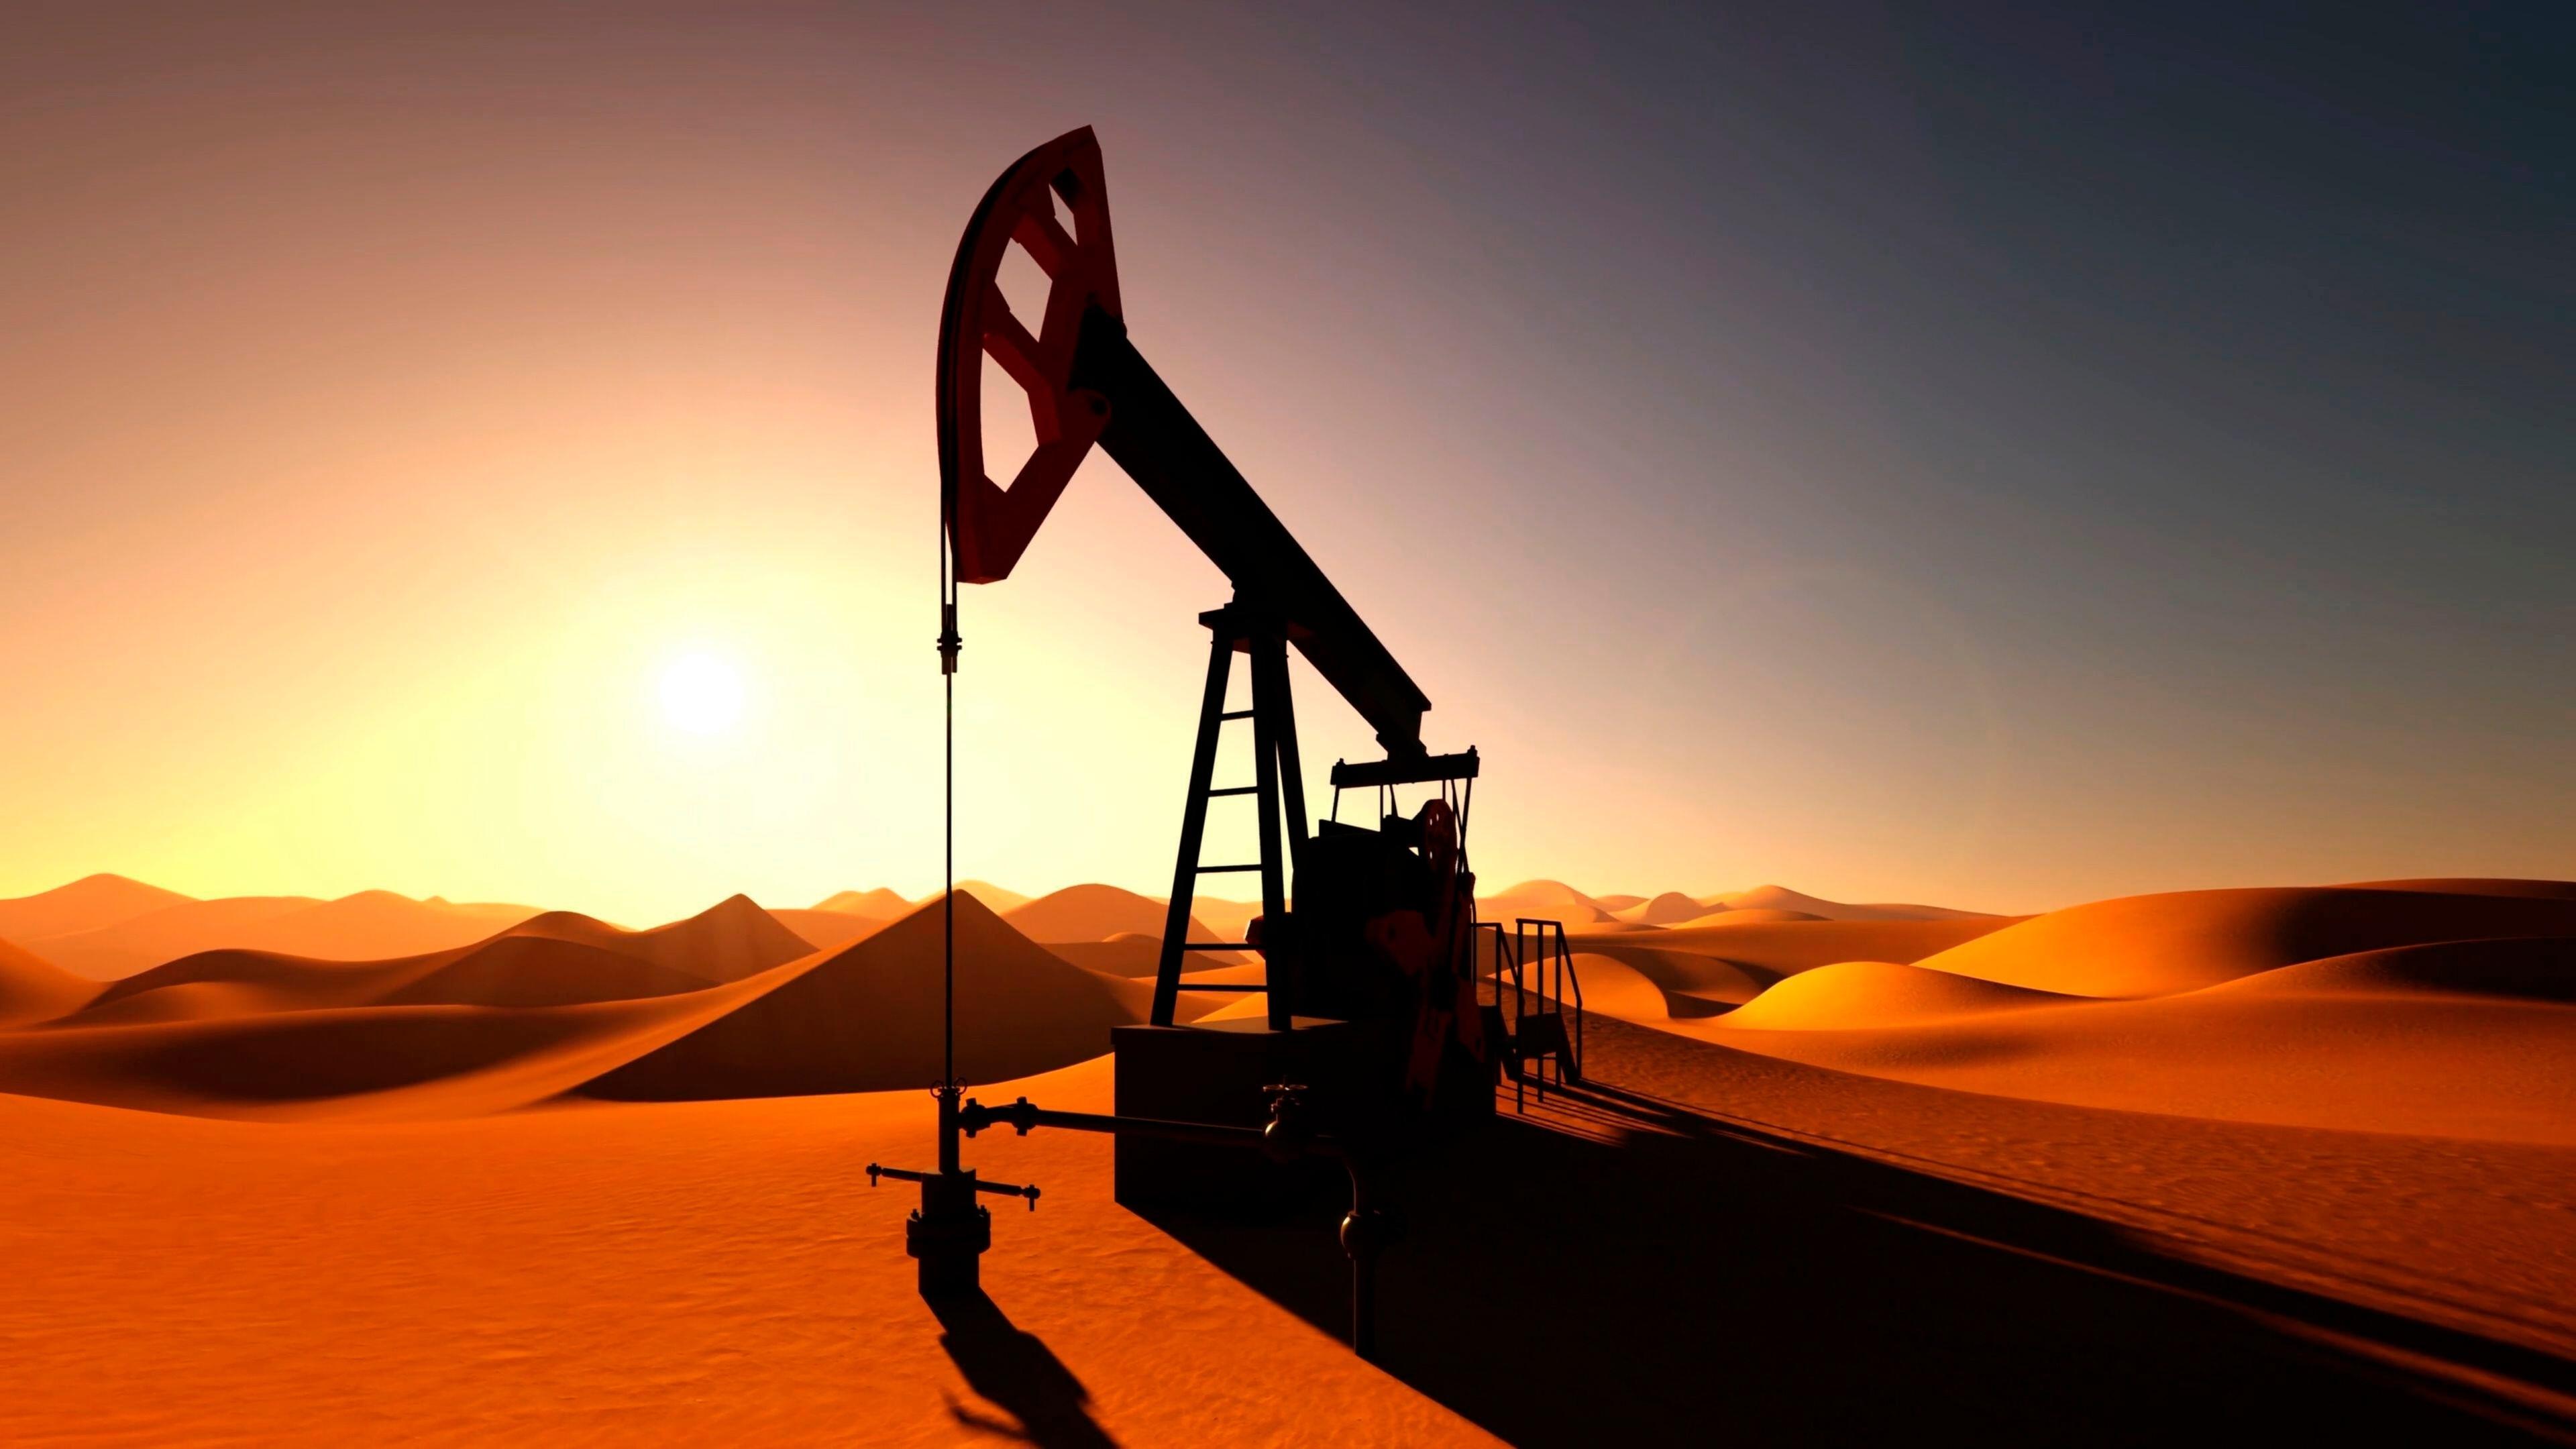 Ölpumpe in der Wüste bei Sonnenuntergang.